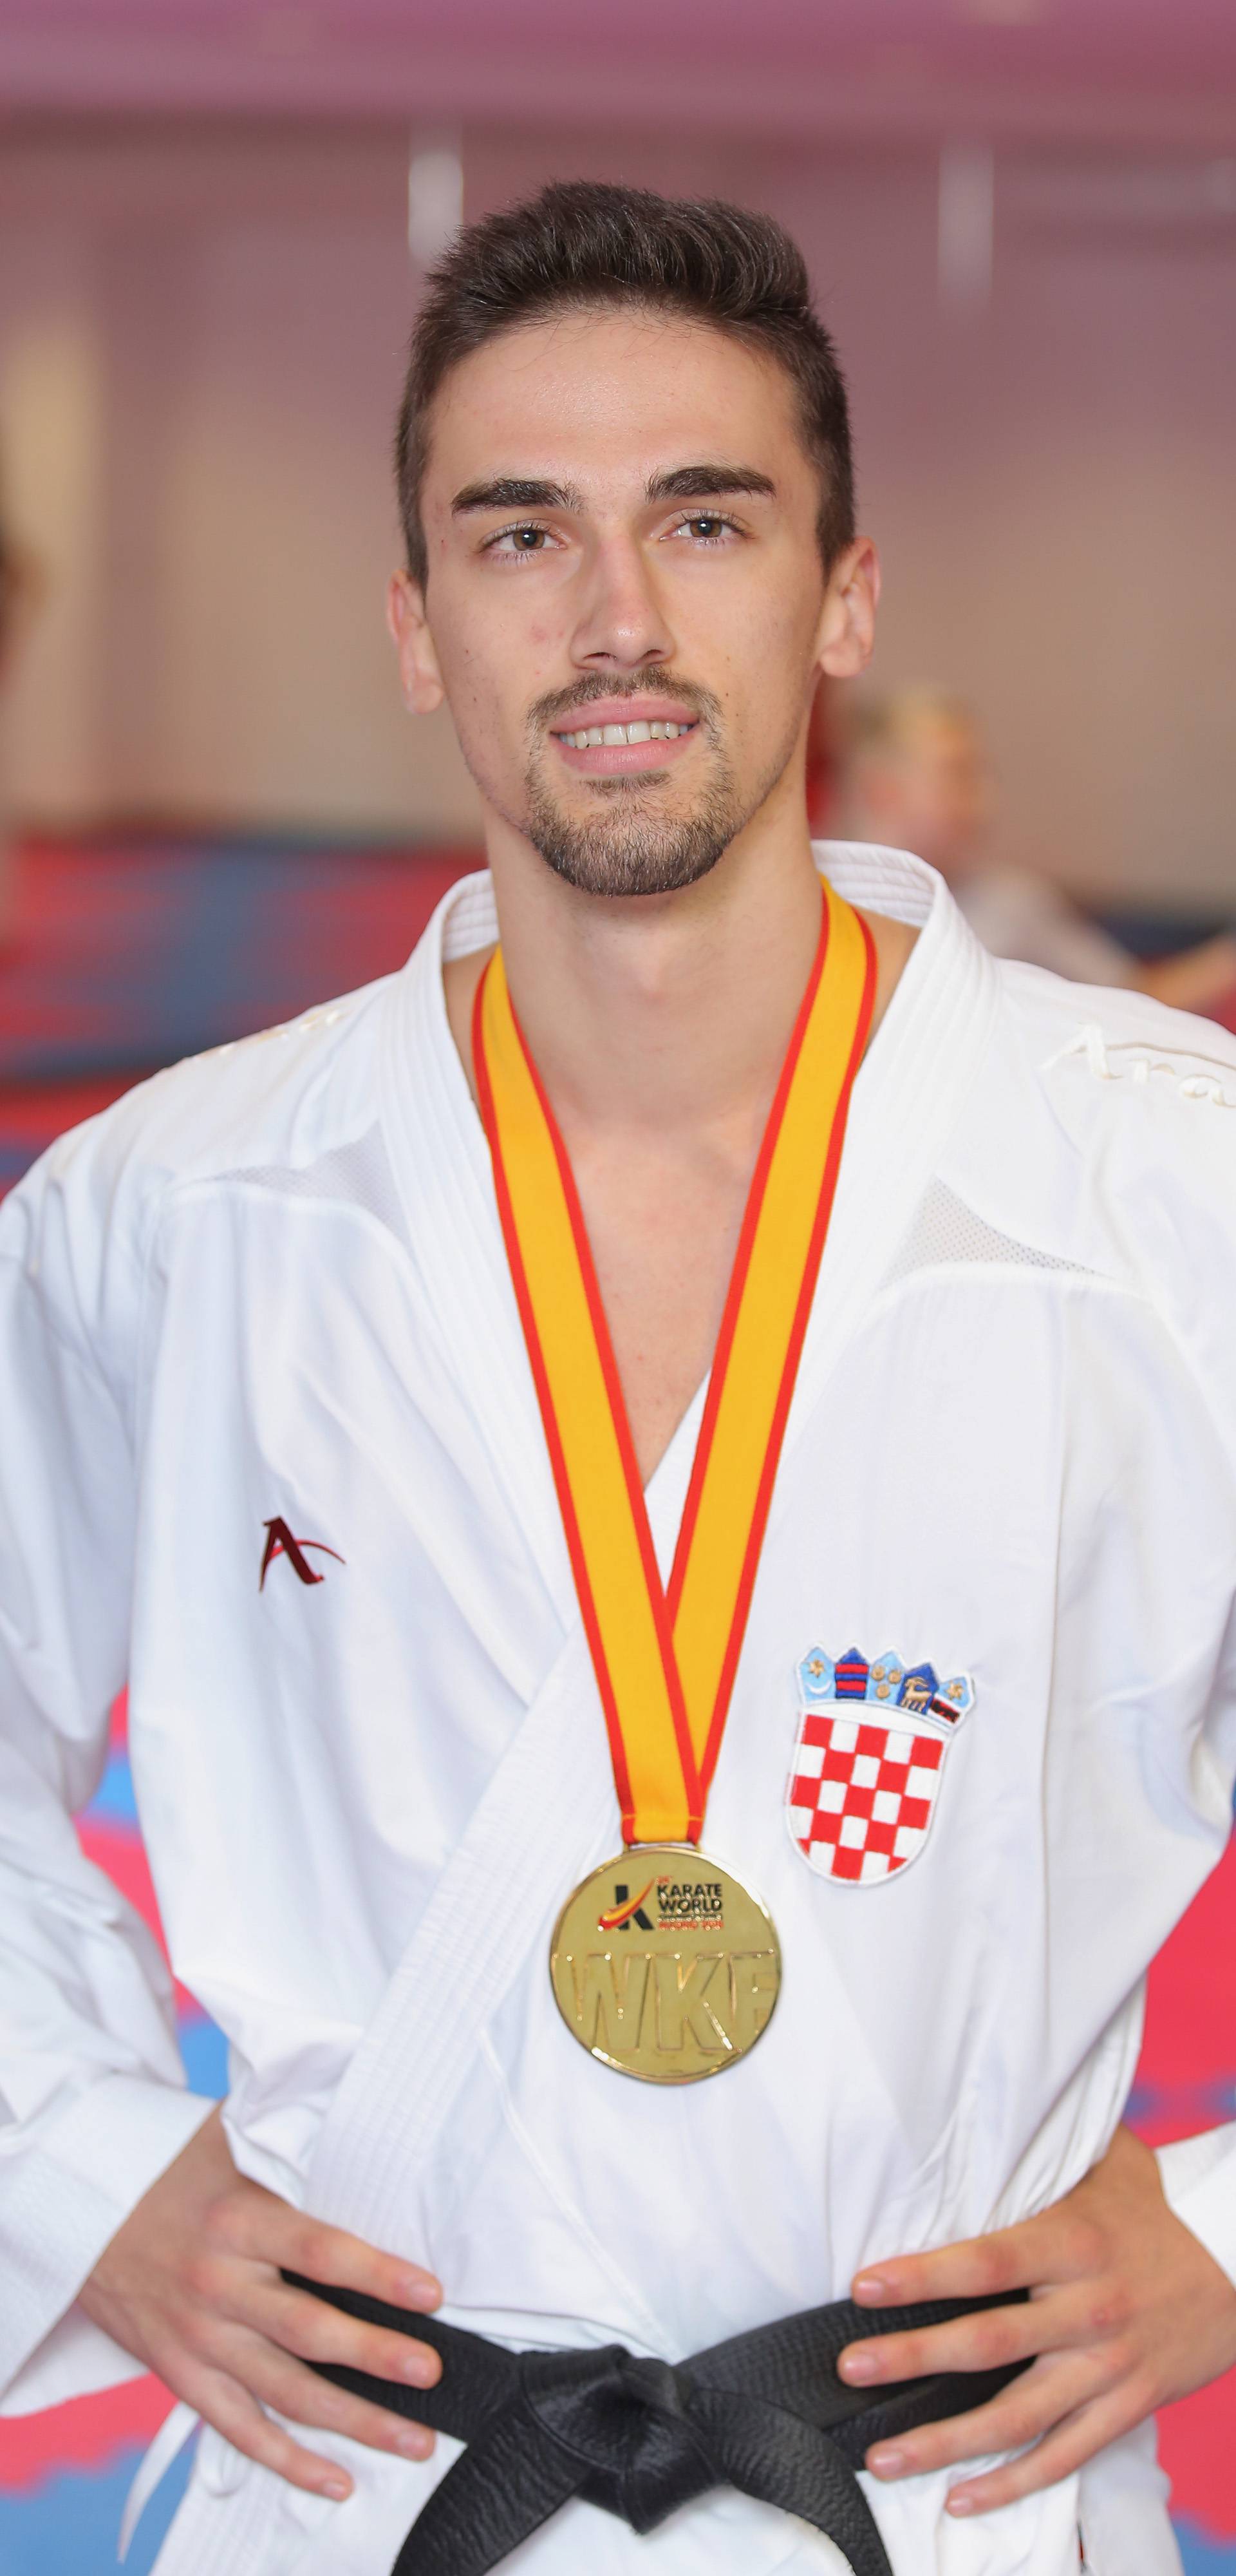 Kolekcionari medalja: Čudesna braća Kvesić najbolja su u regiji